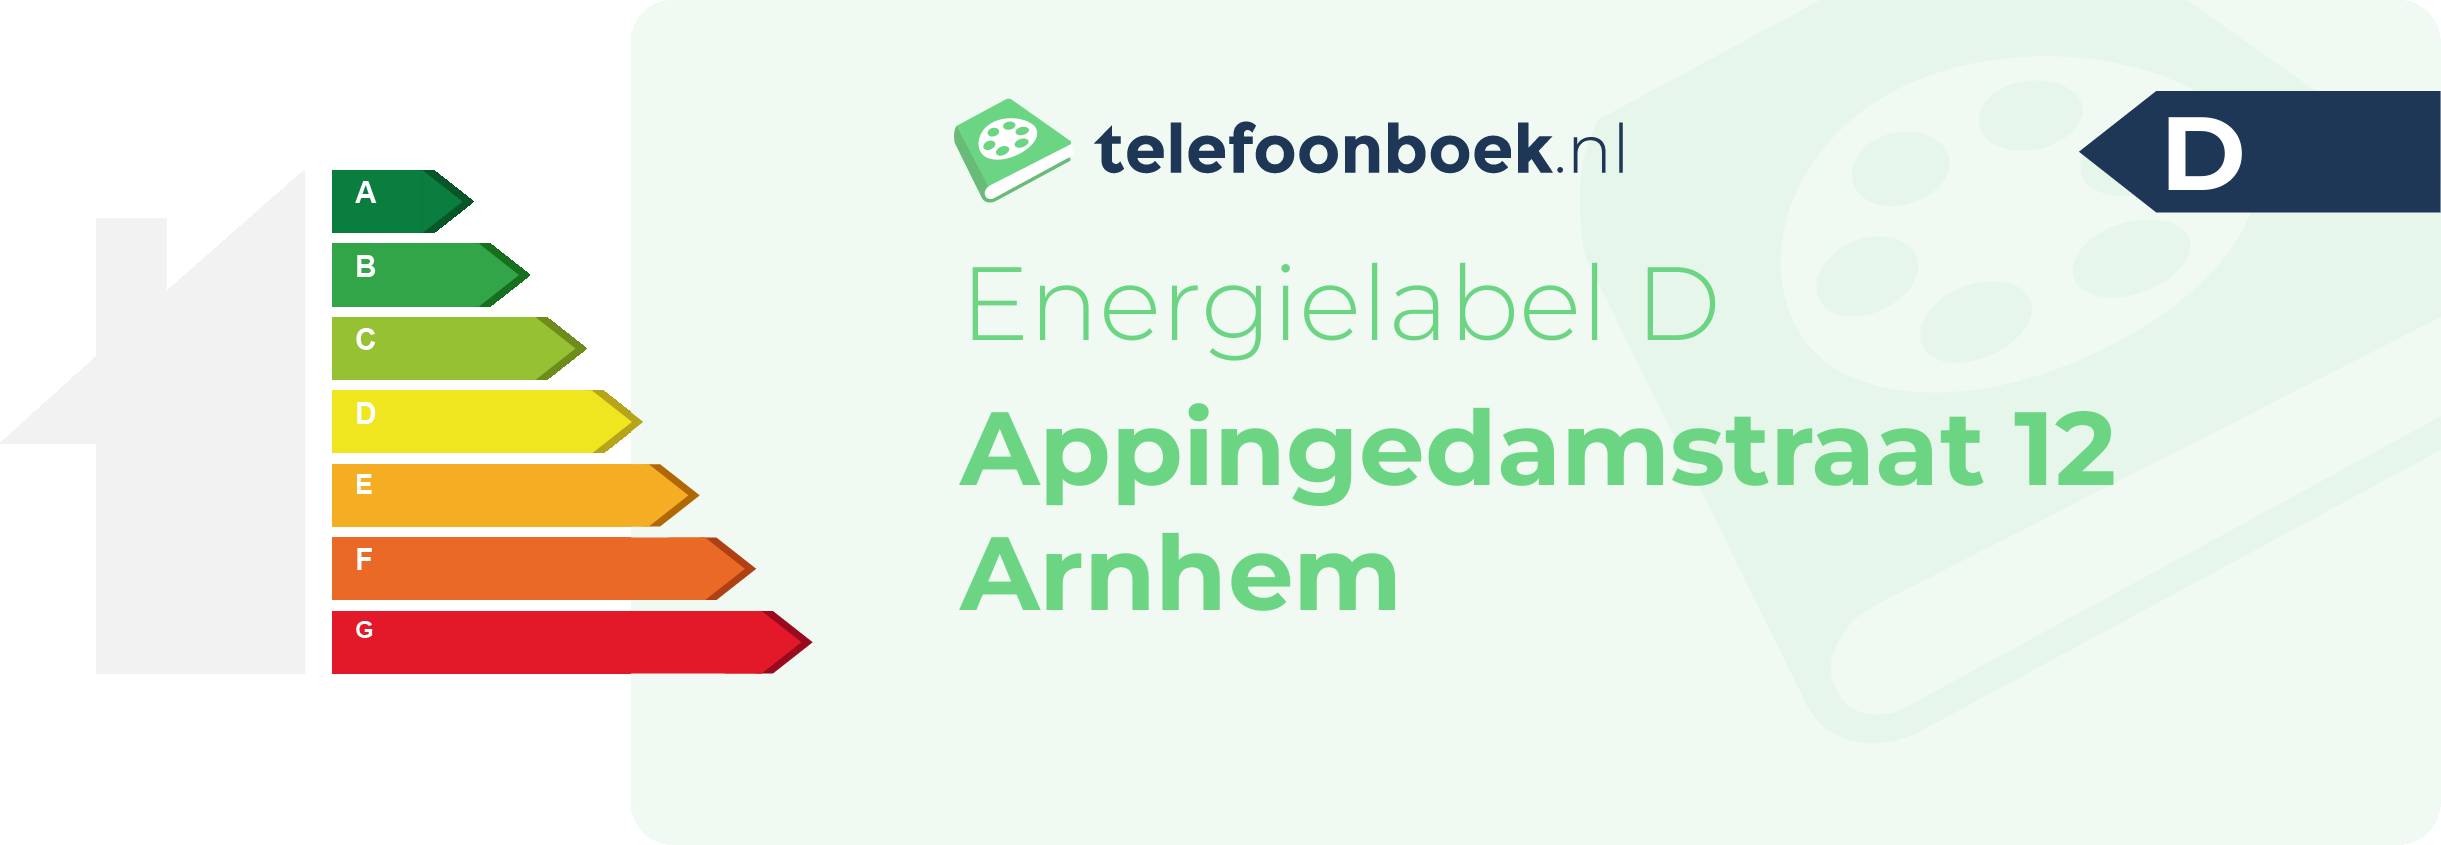 Energielabel Appingedamstraat 12 Arnhem